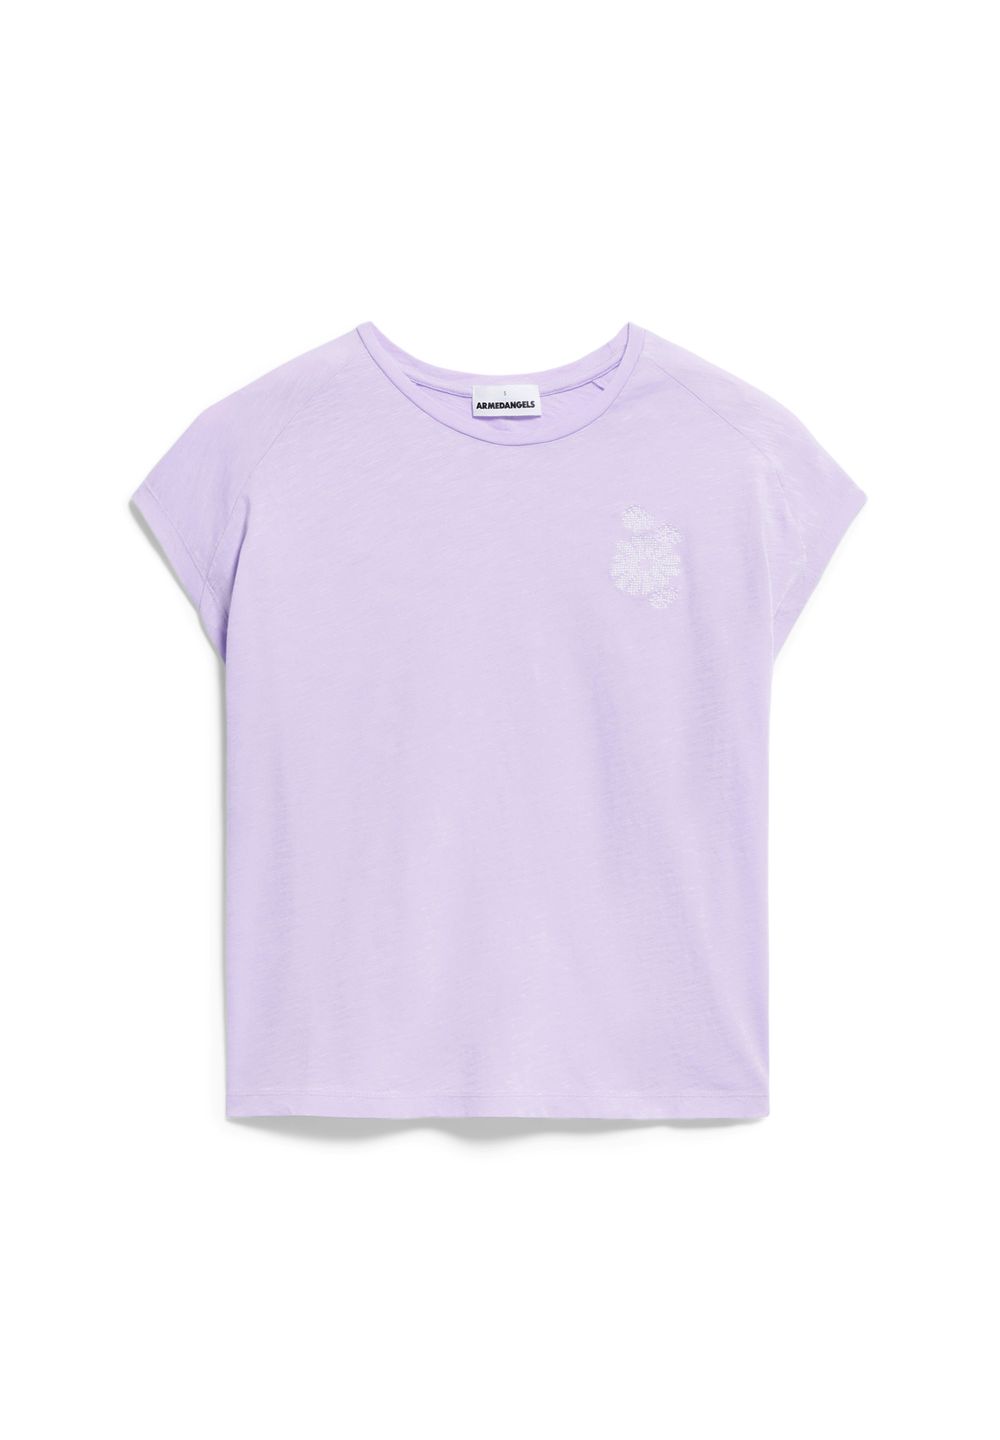 T-Shirt Oneliaa Faancy lavender light von Armedangels